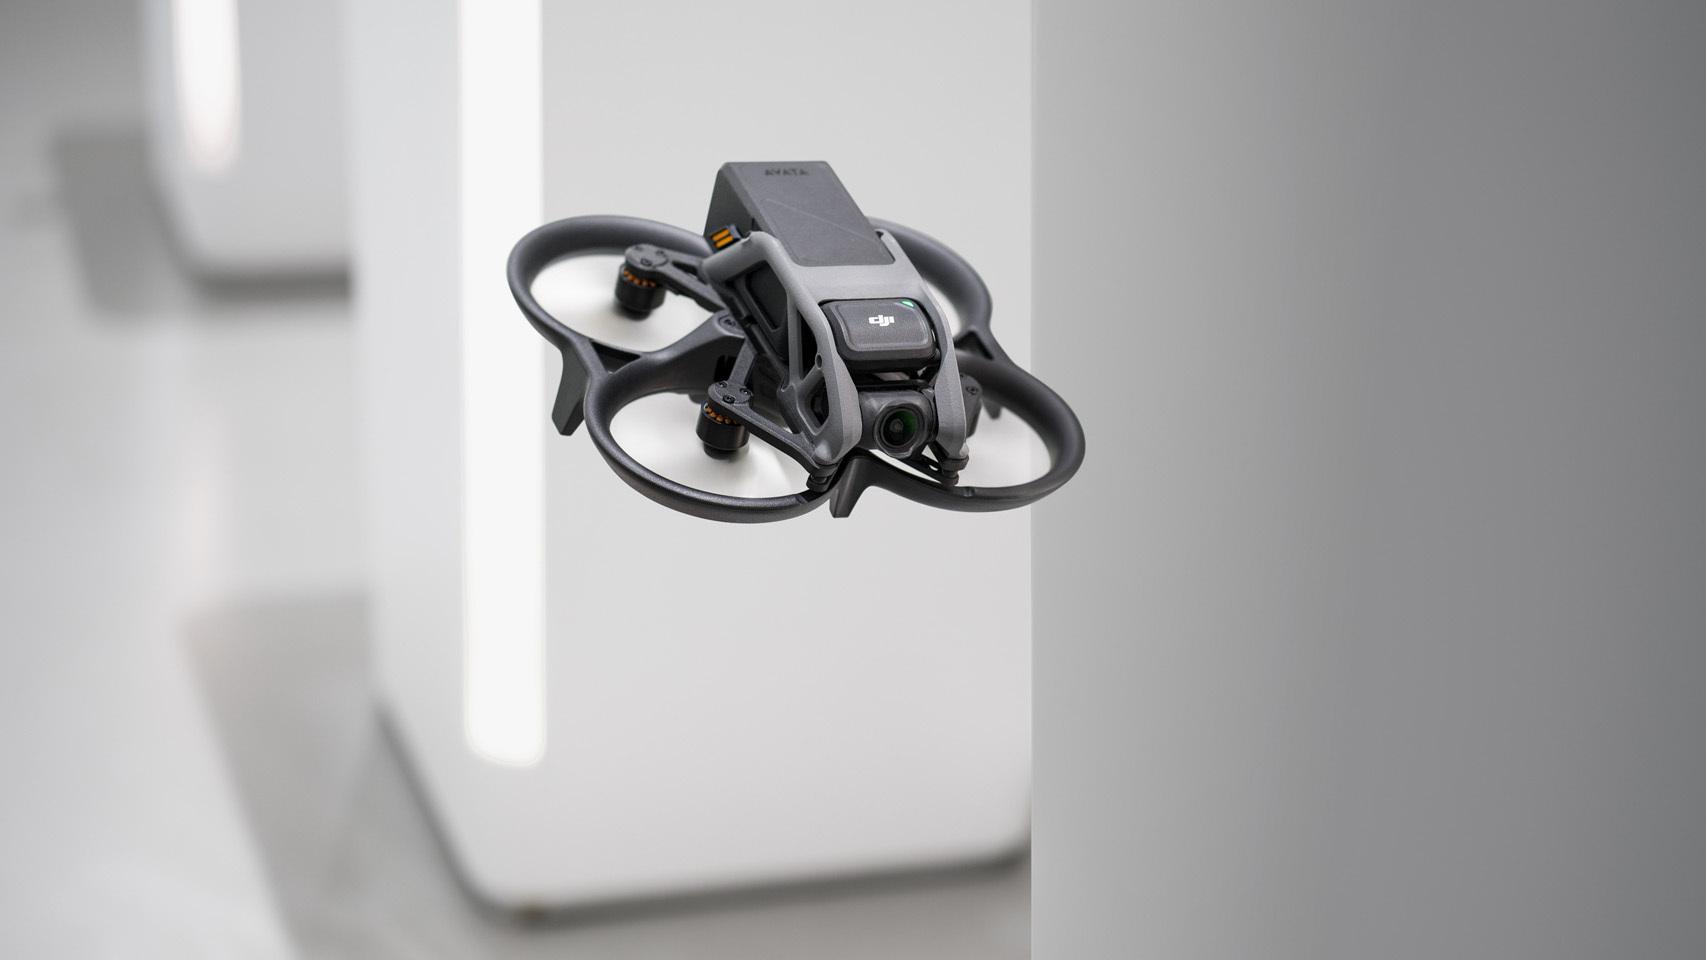 He probado el dron más pequeño y potente de DJI: cualquiera puede volar con  él como un profesional